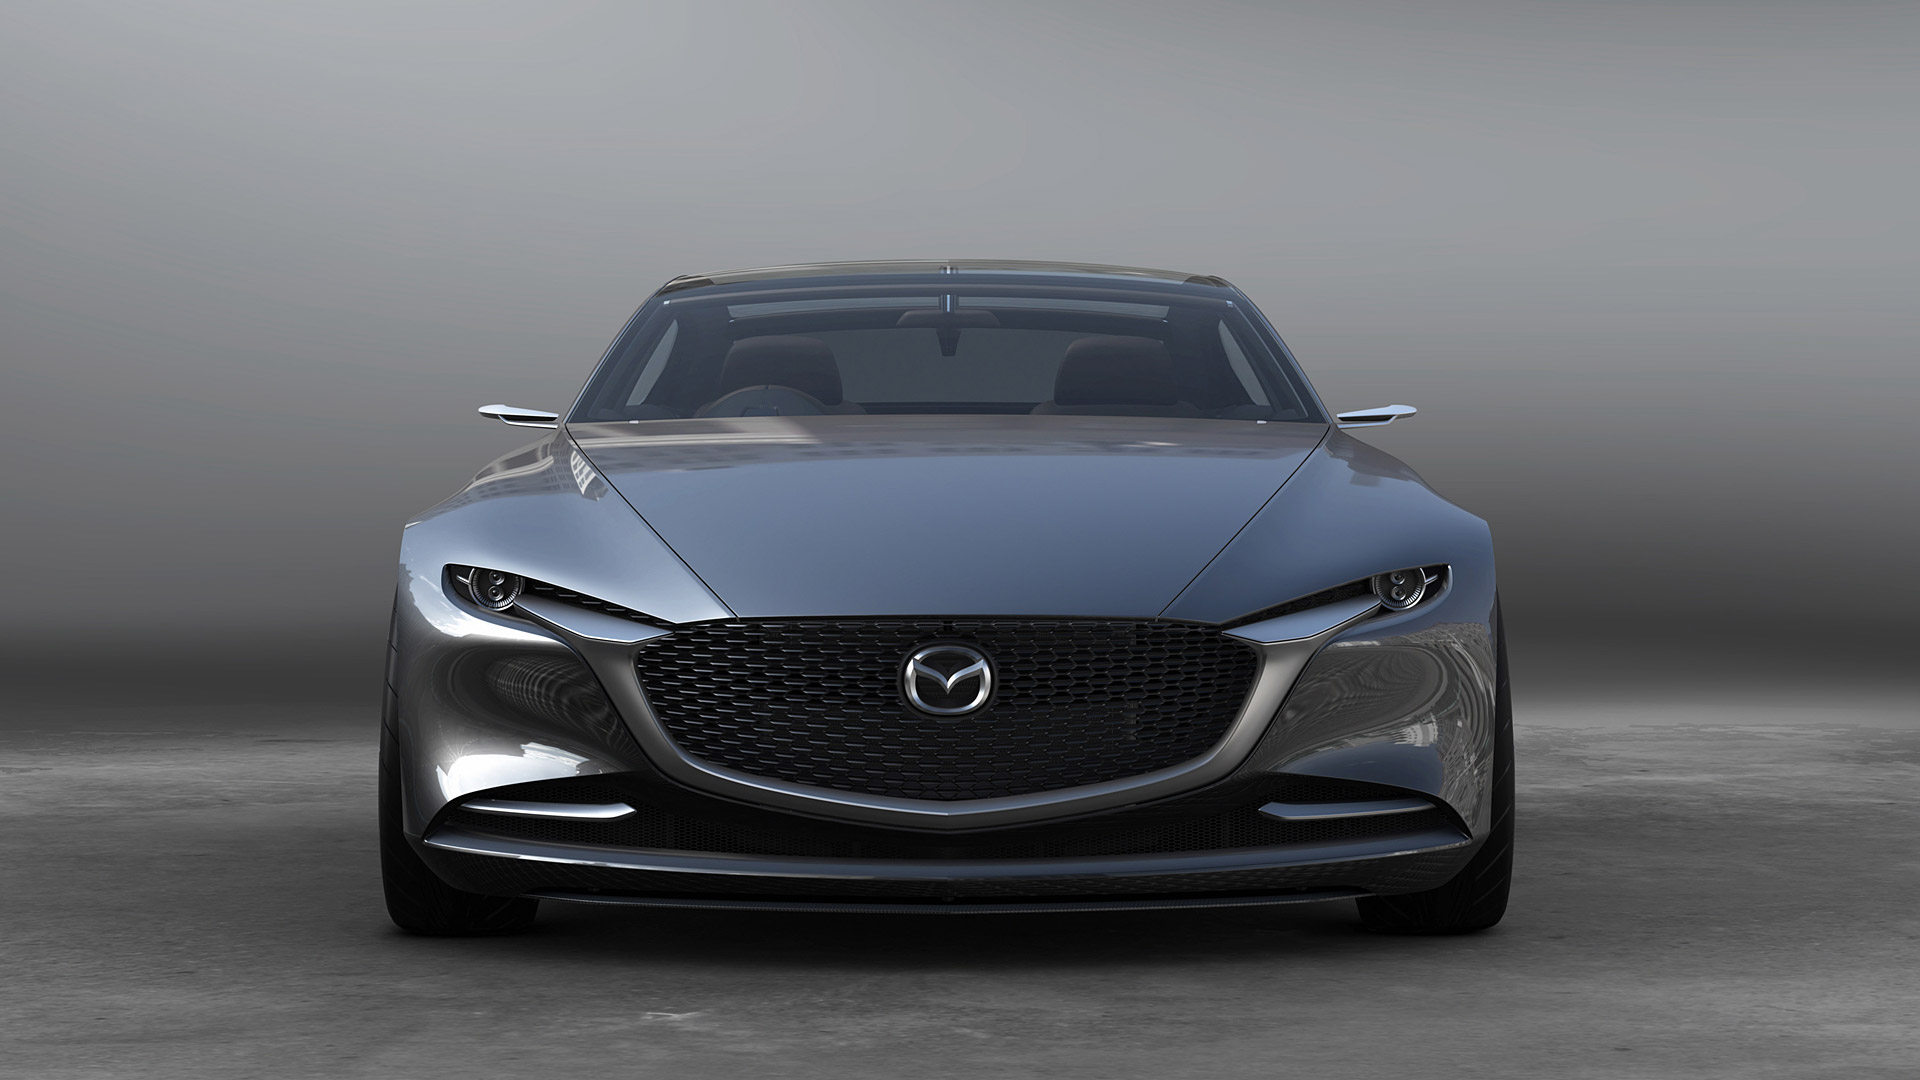  2017 Mazda Vision Coupe Concept Wallpaper.